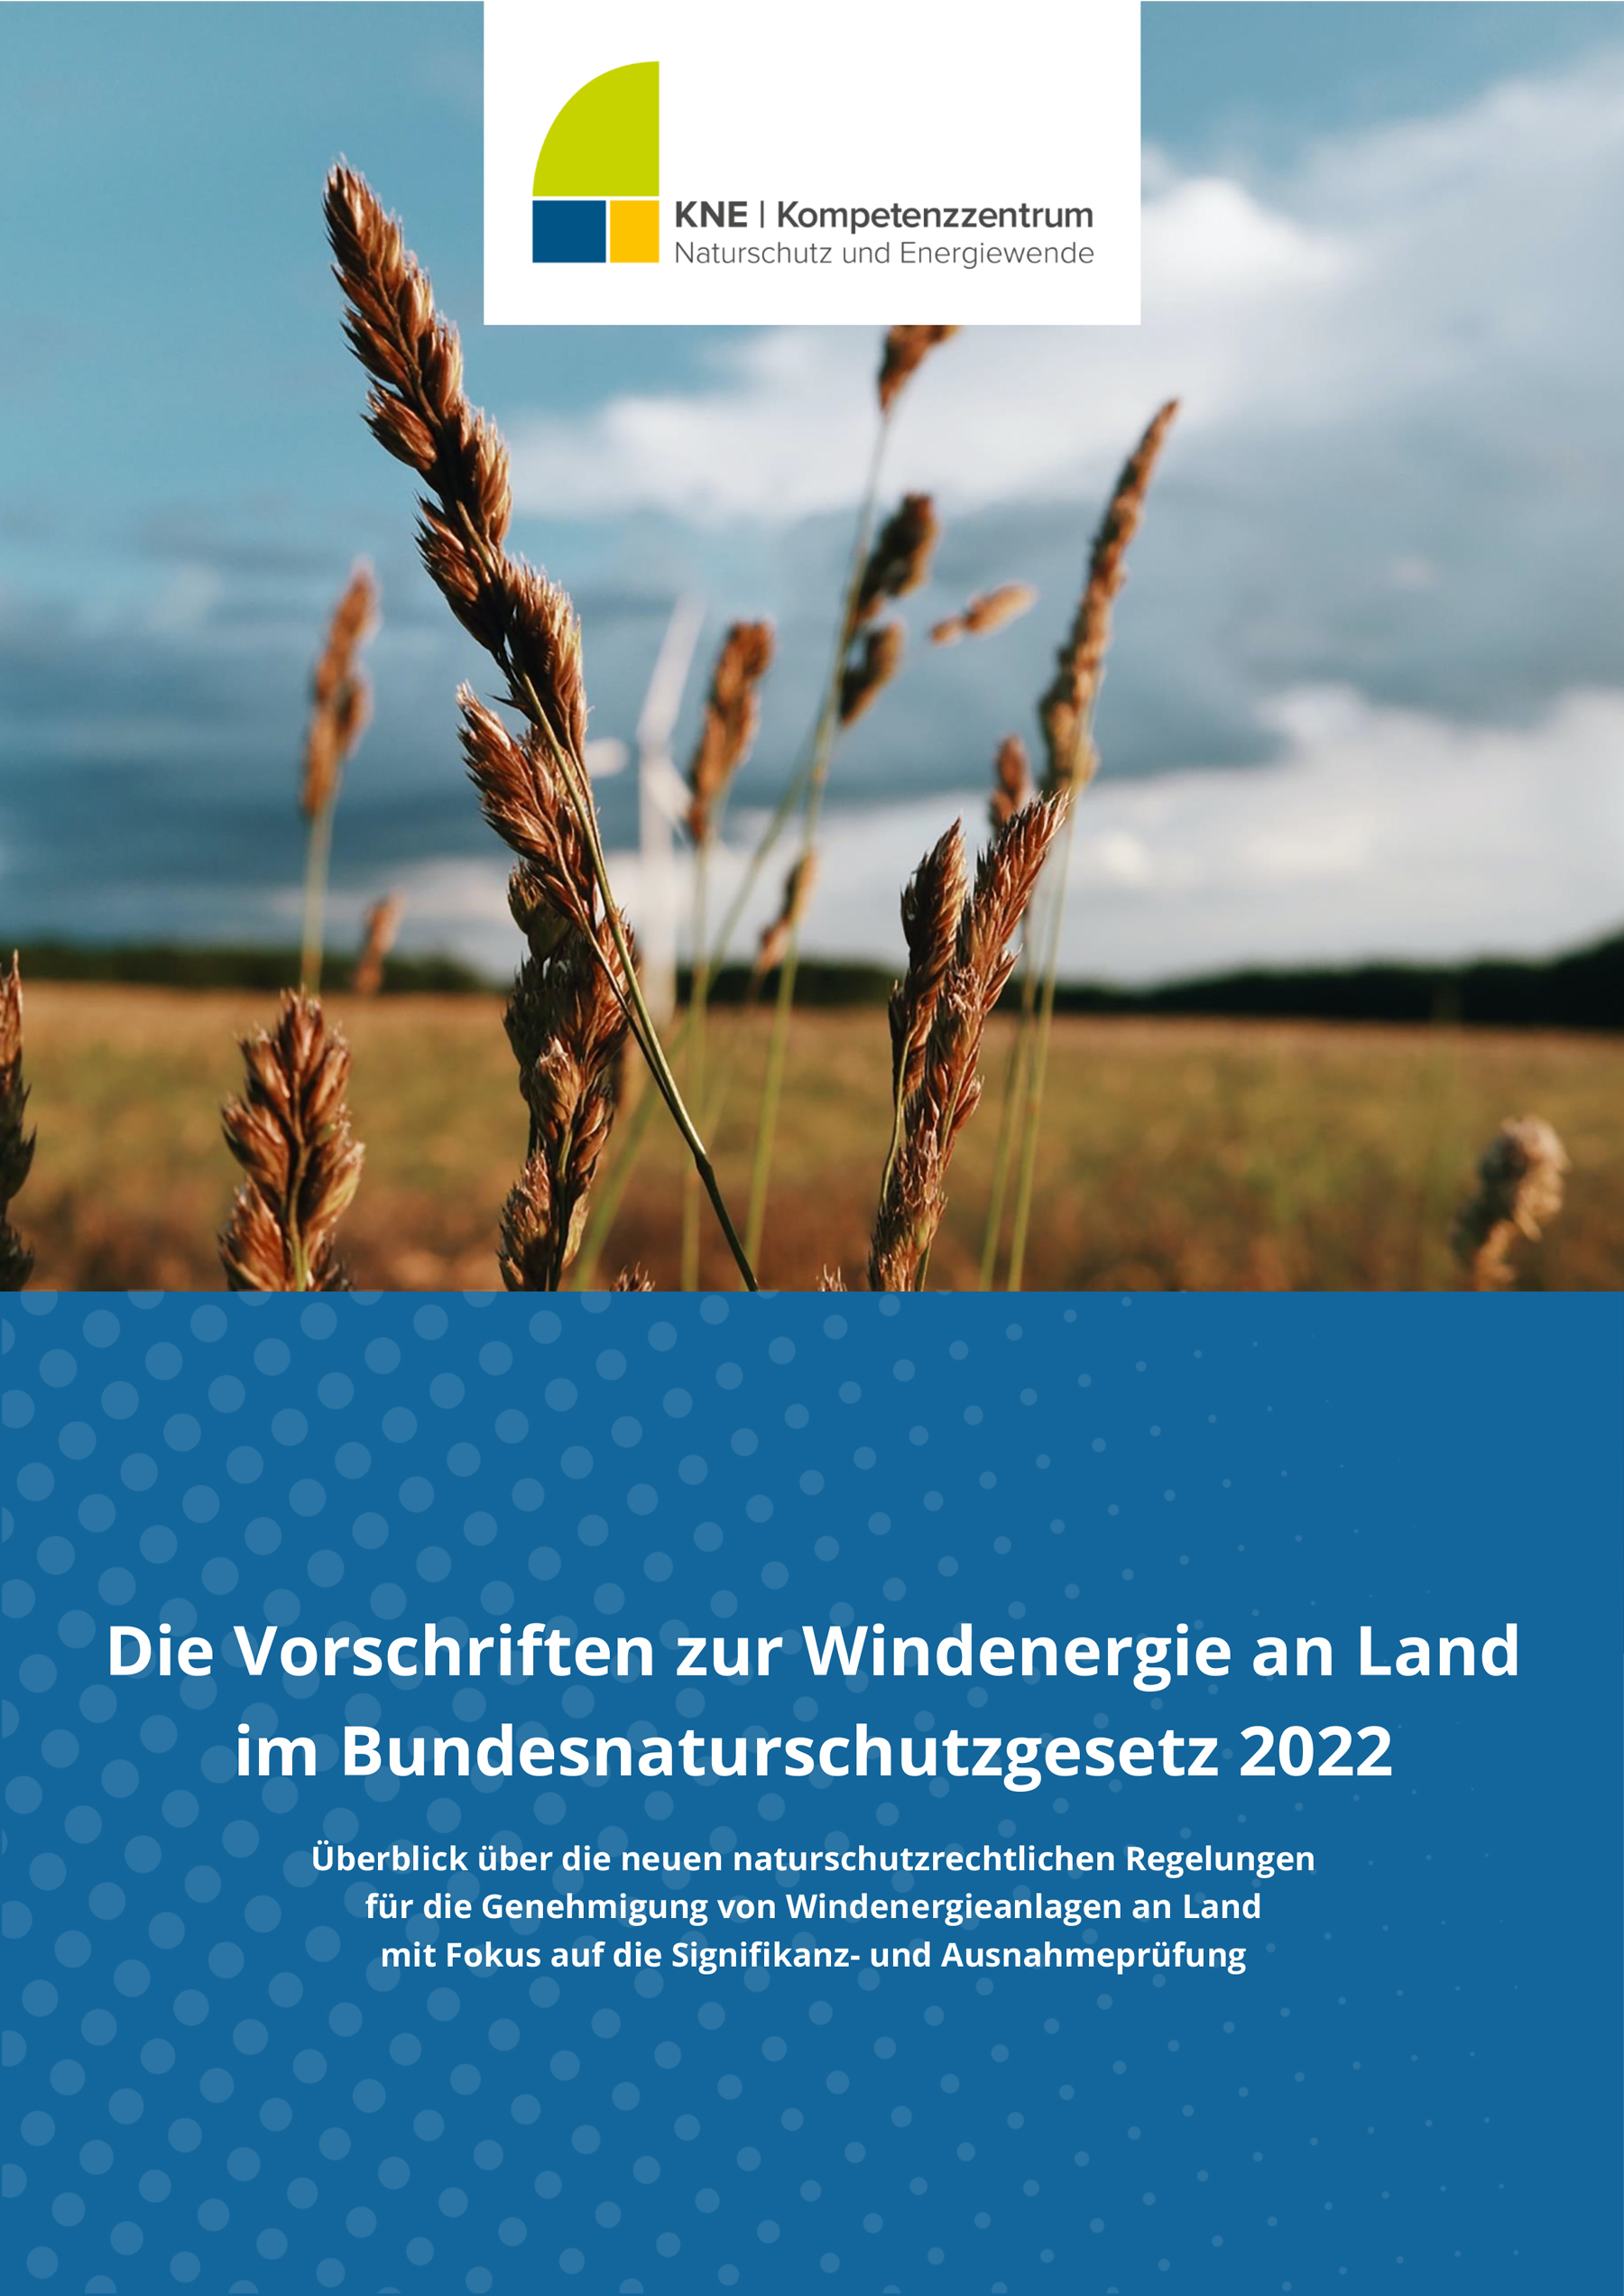 Titelblatt Publiaktion KNE-Die-Vorschriften-zur-Windenergie-an-Land-2022